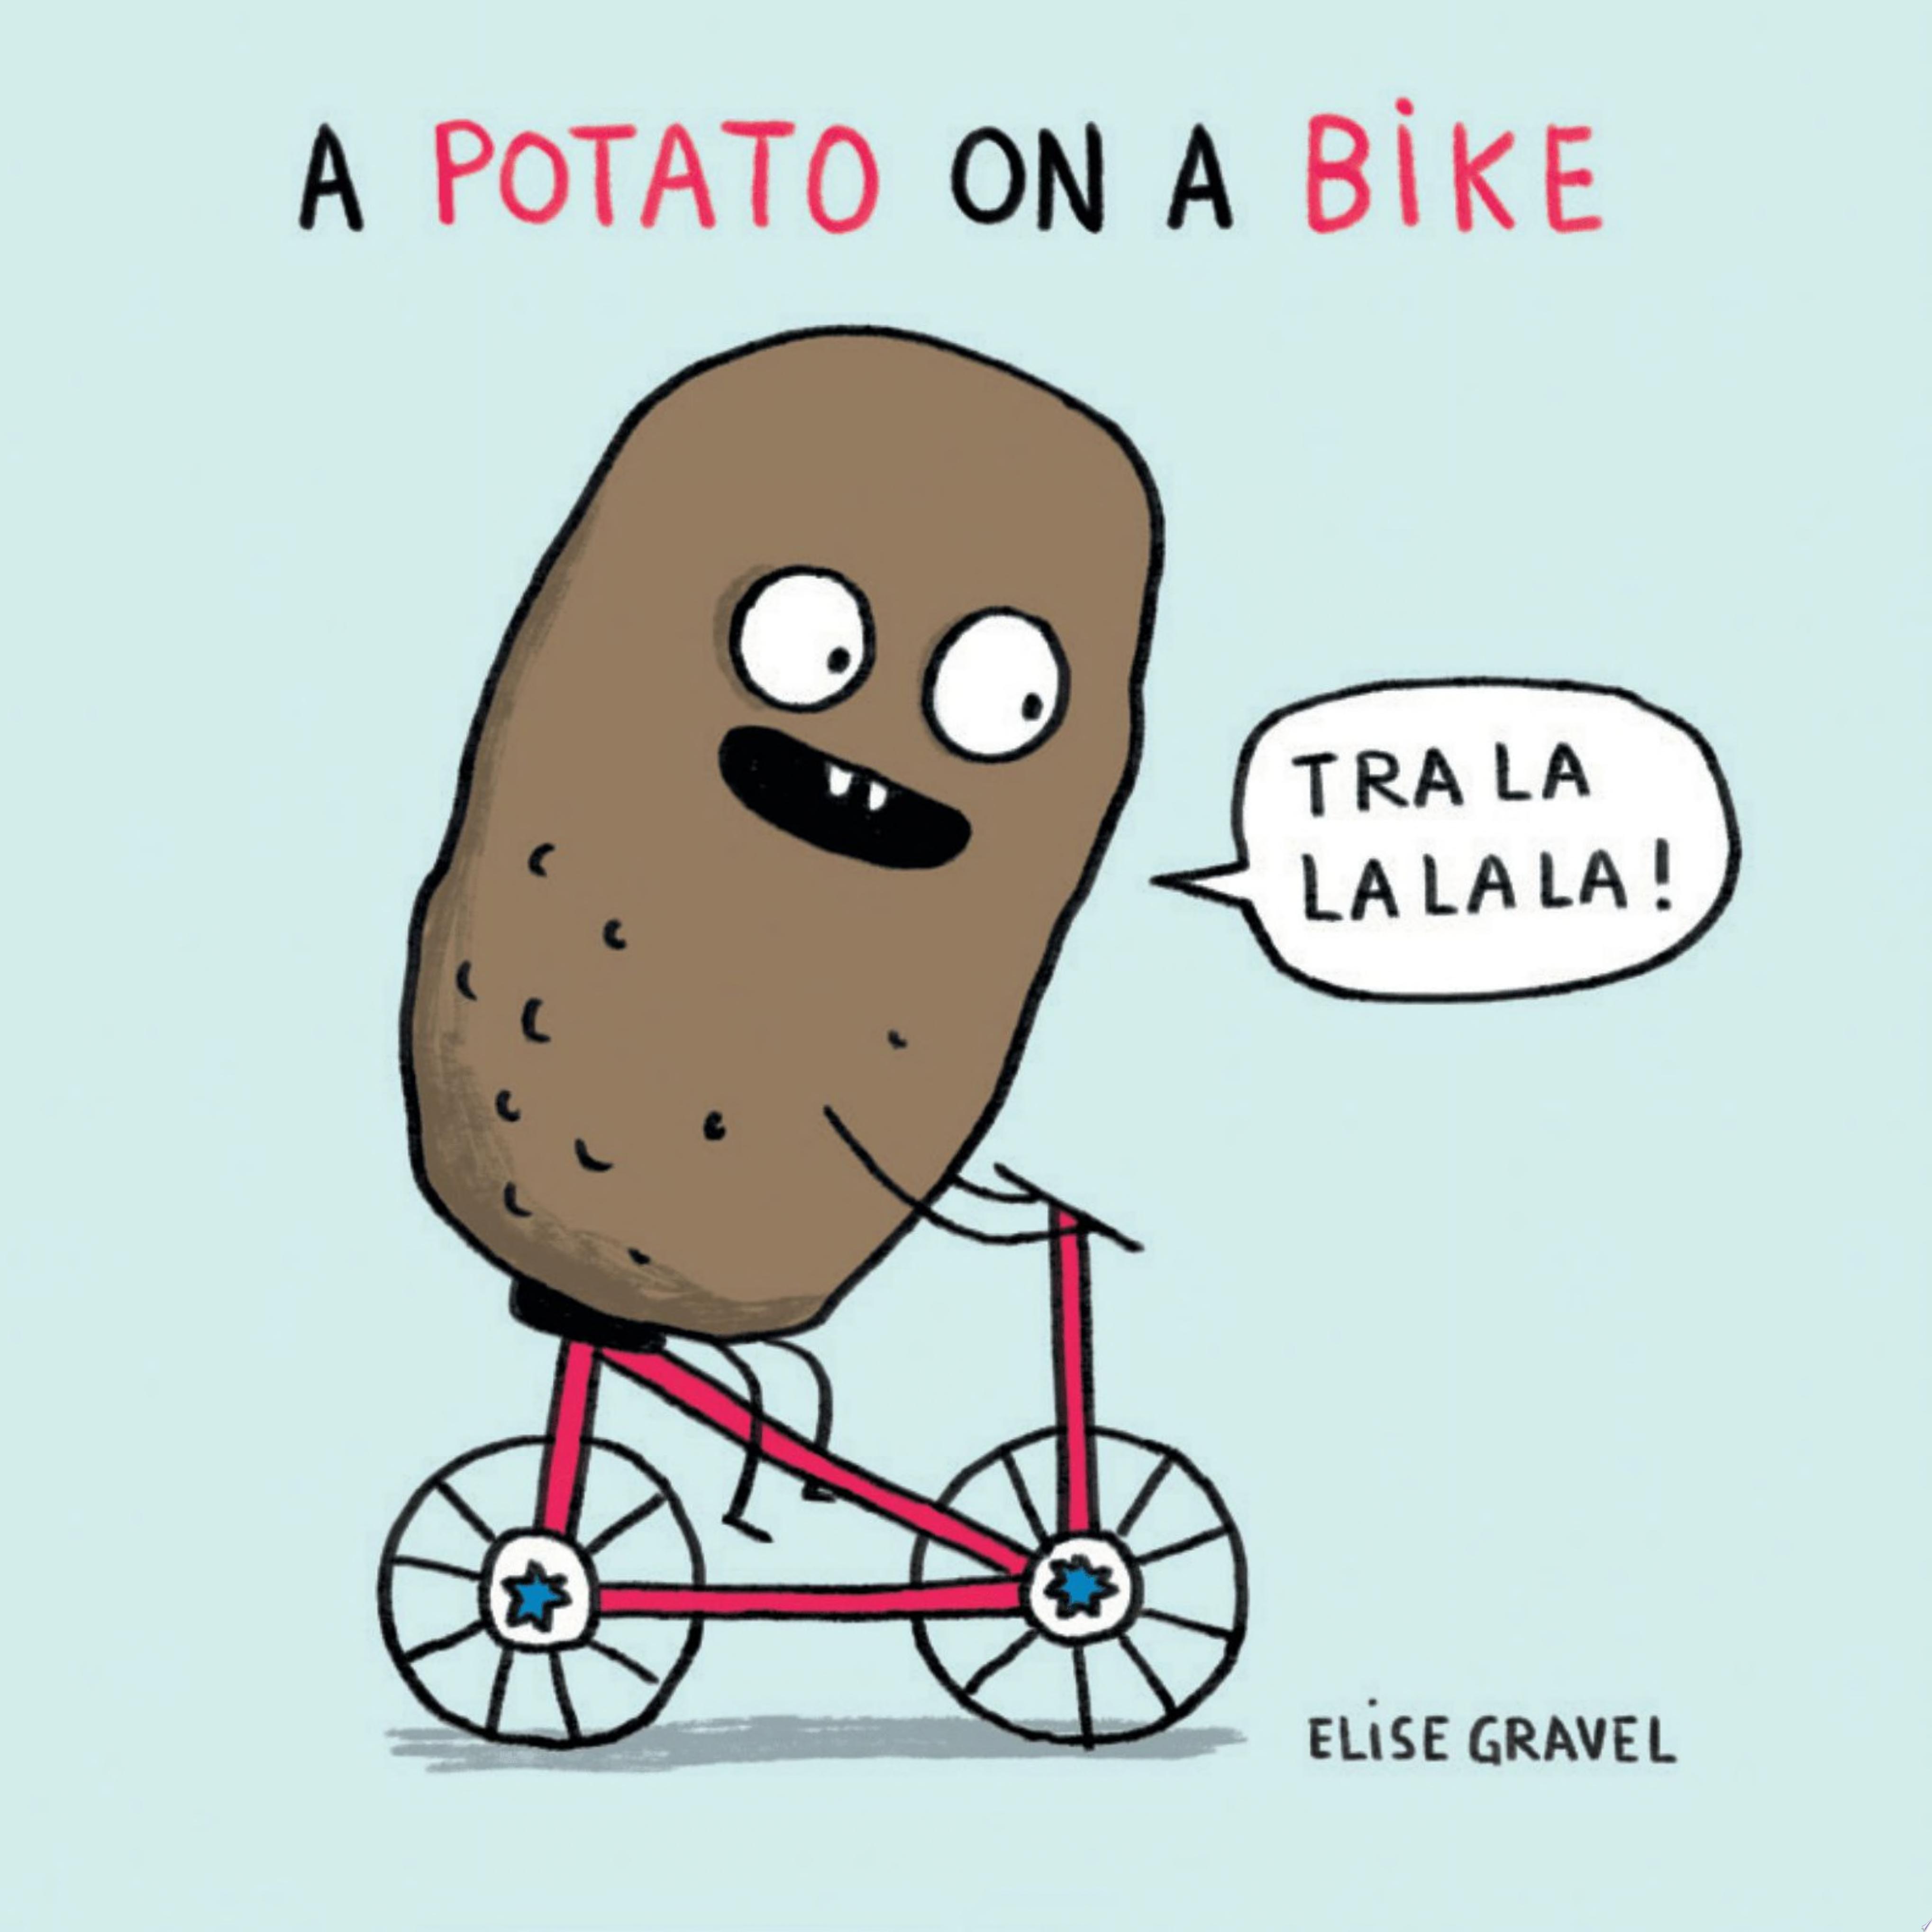 Image for "A Potato on a Bike"